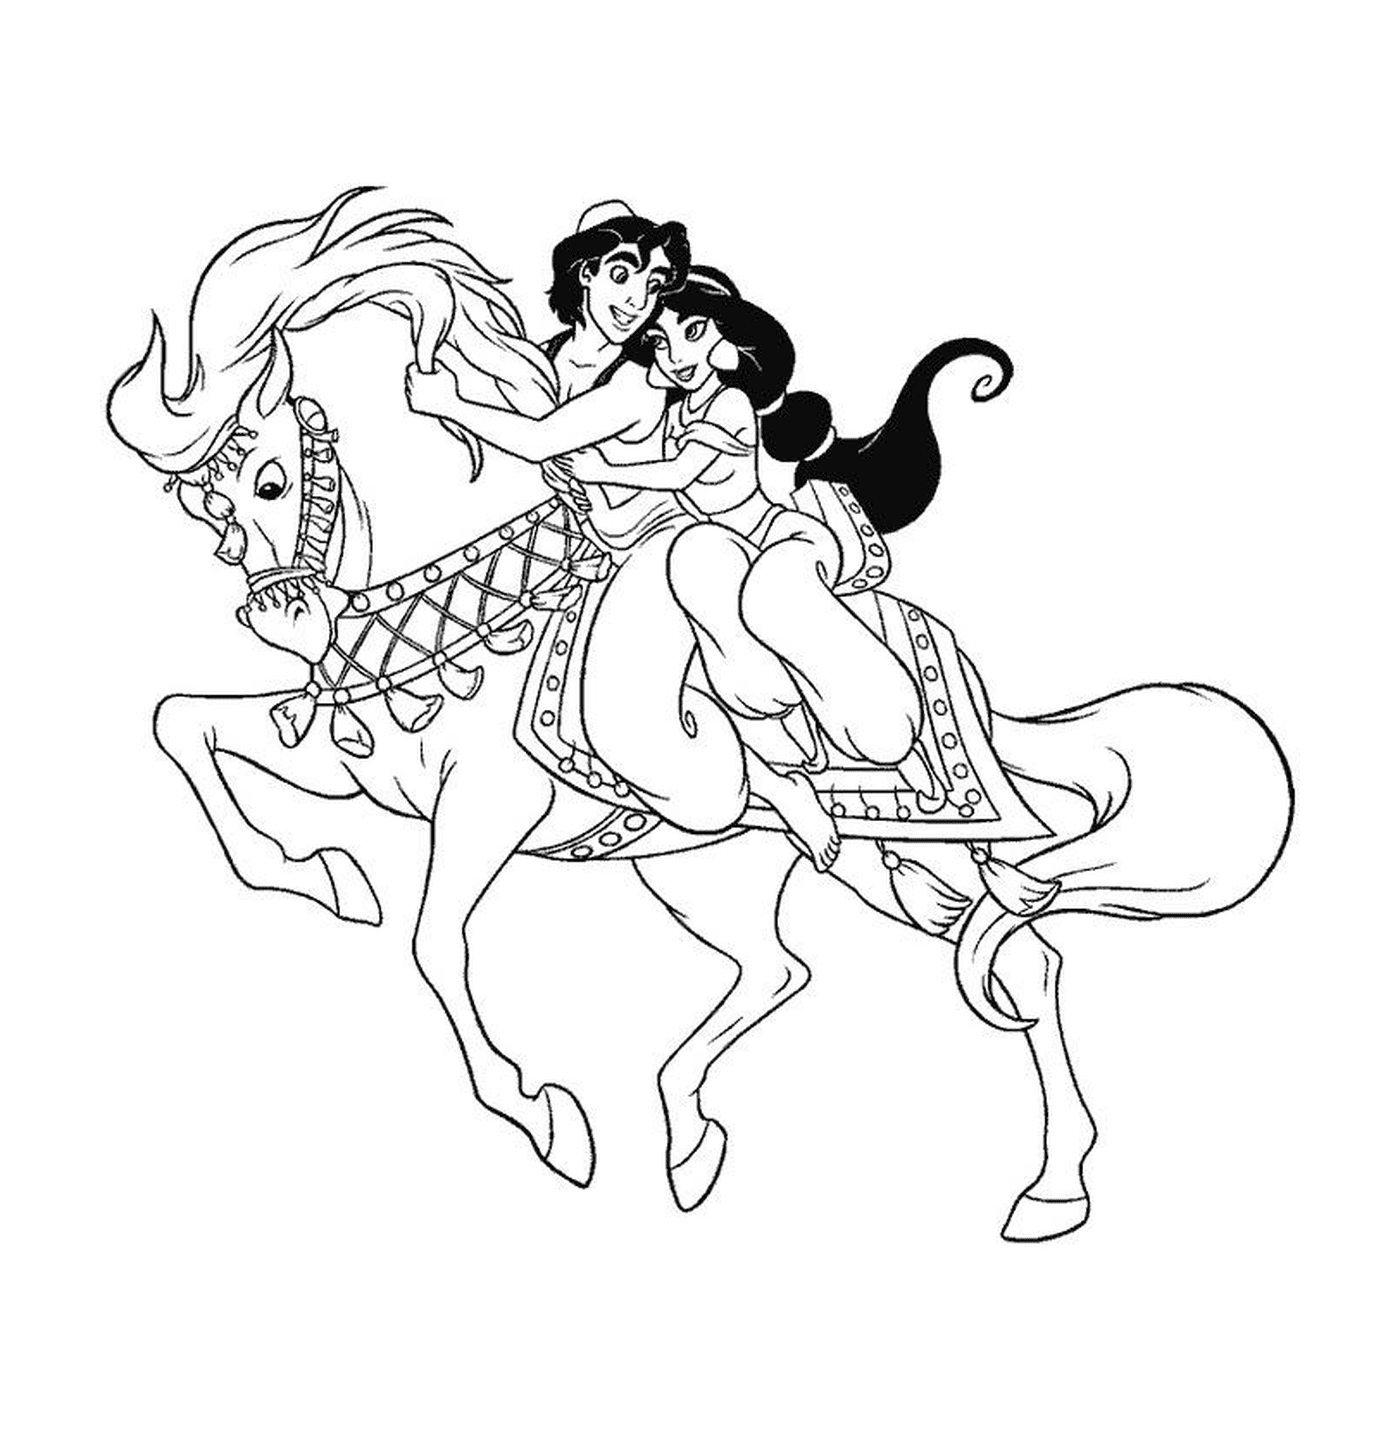  Aladdin e Jasmine su un cavallo 